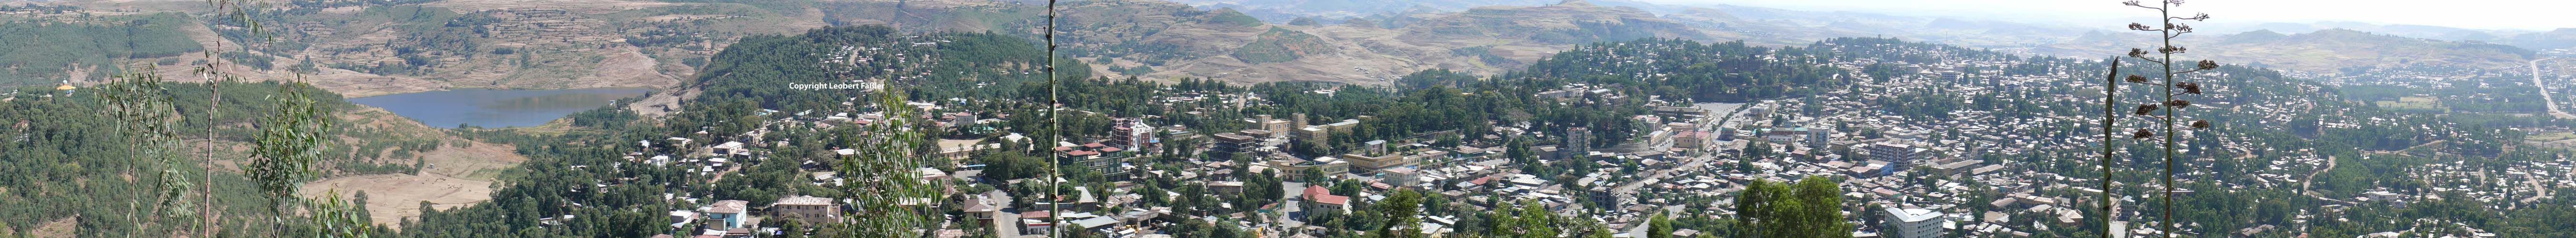 Gondar_Panorama_1108